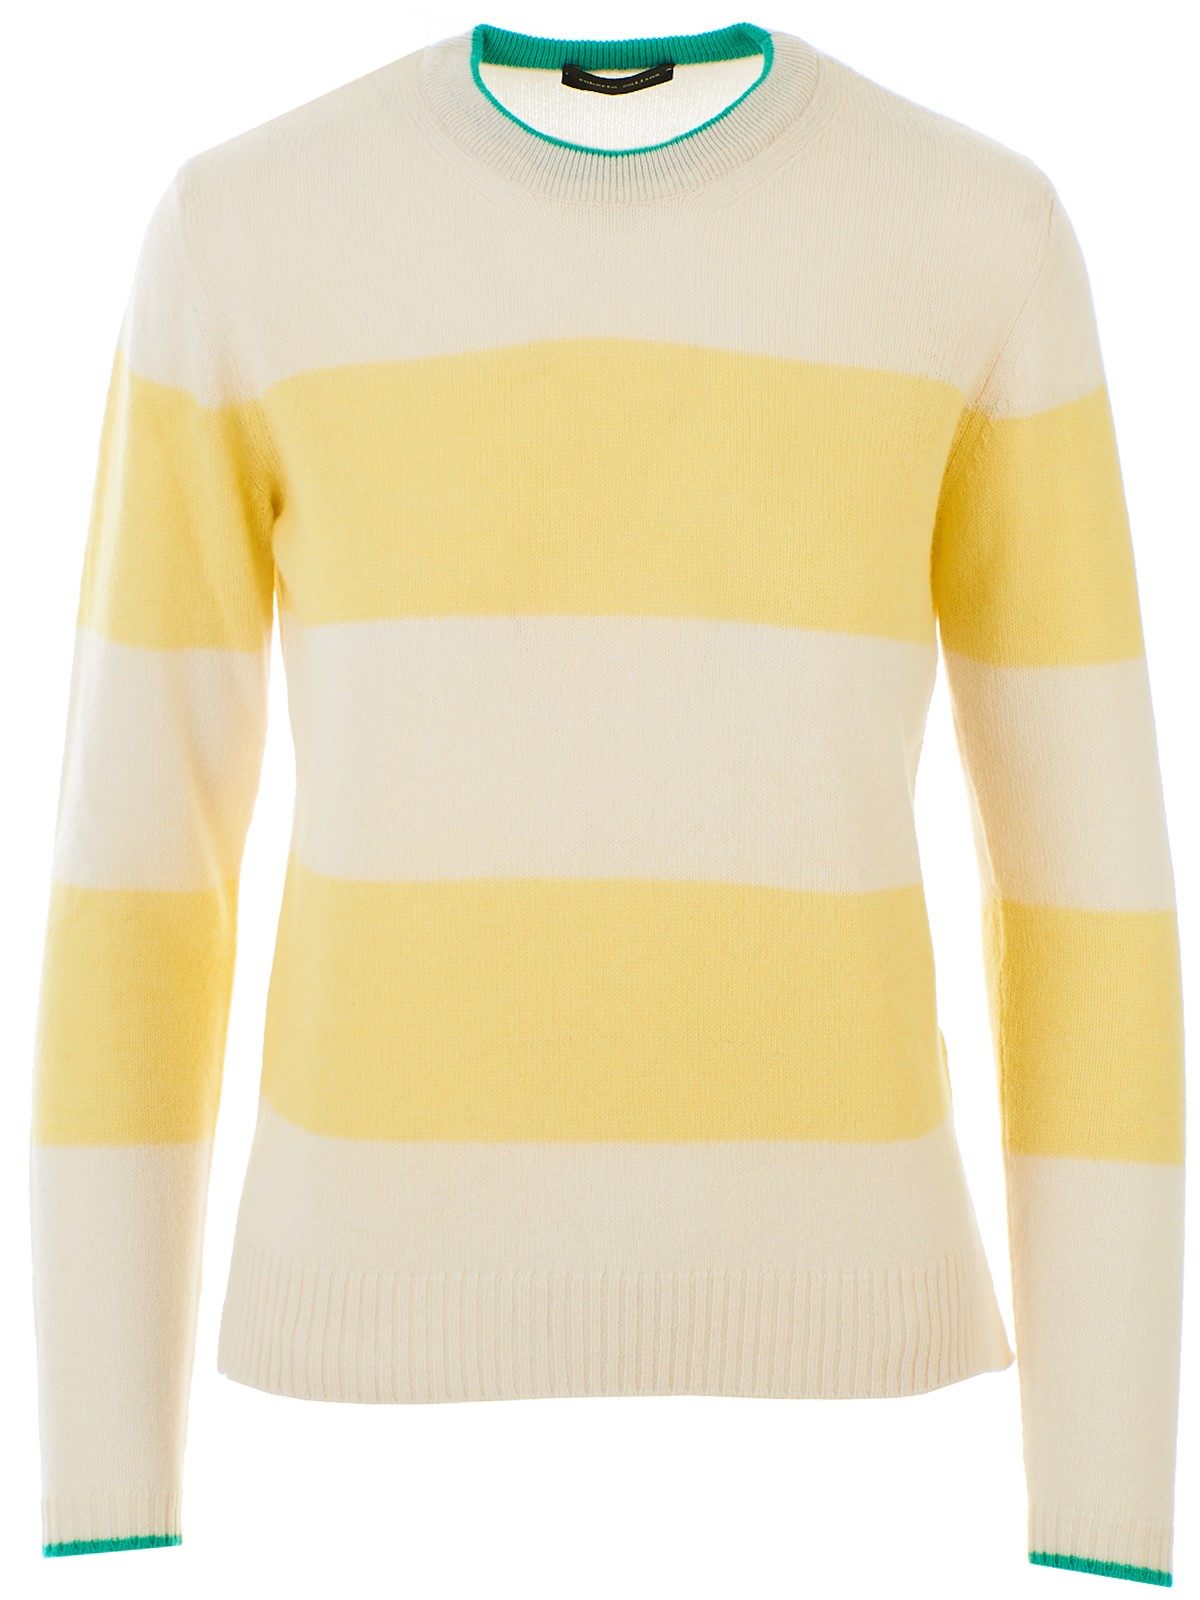 Roberto Collina Cream And Yellow Sweater